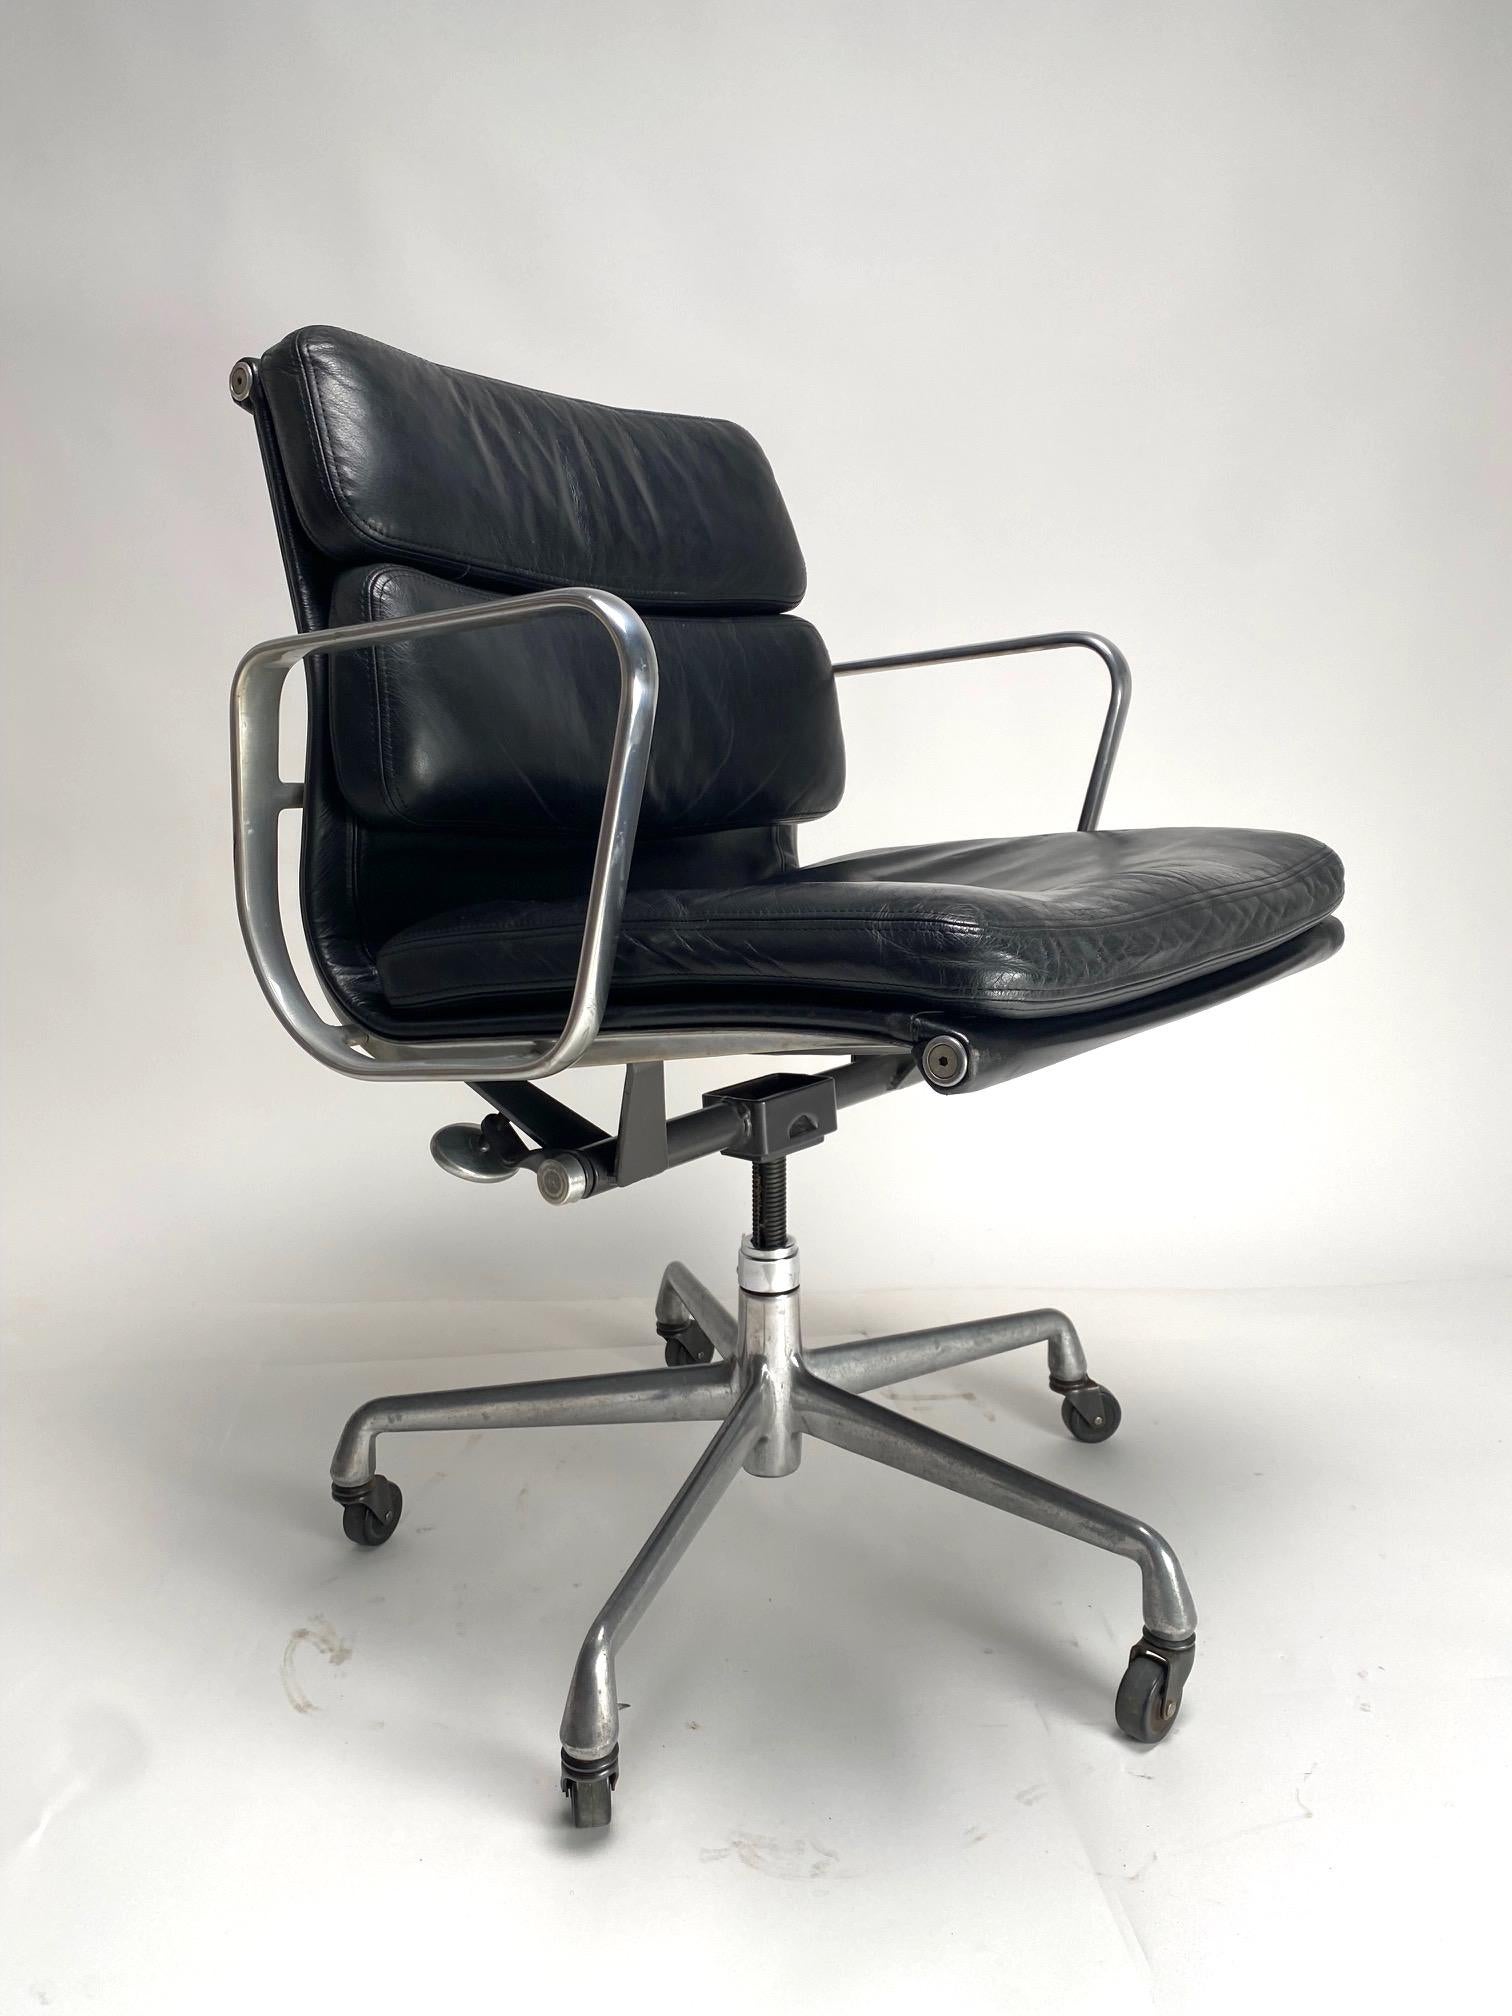 EA217 black Soft Pad Chair by Charles & Ray Eames for Herman miller, 1970s

Chaise en cuir noir avec base et roues en aluminium. Il pivote sur lui-même et est réglable en hauteur.